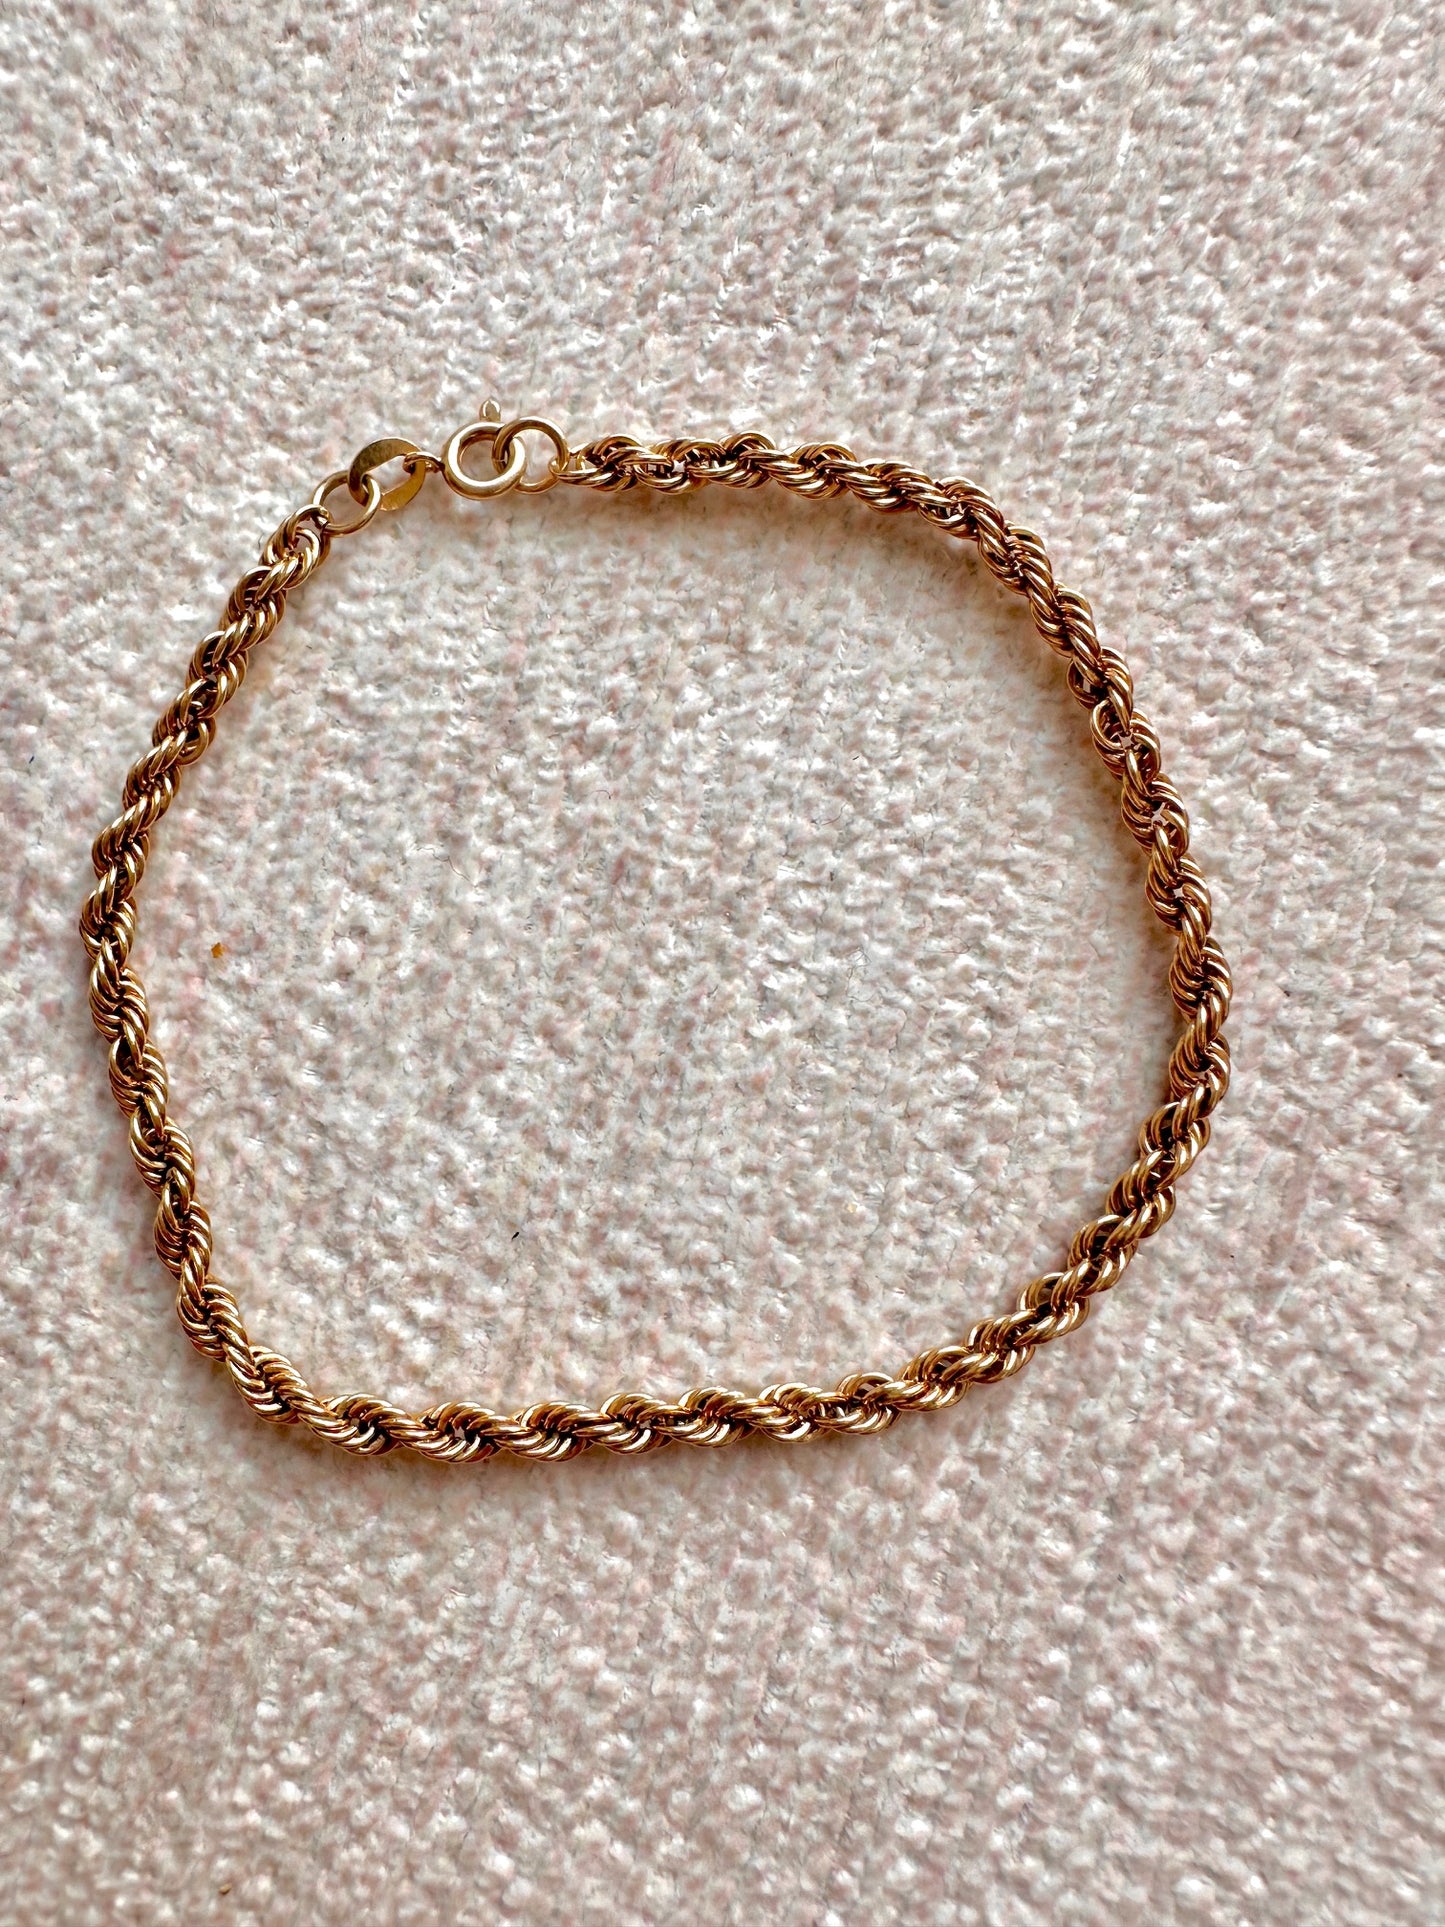 10k gold chain rope bracelet